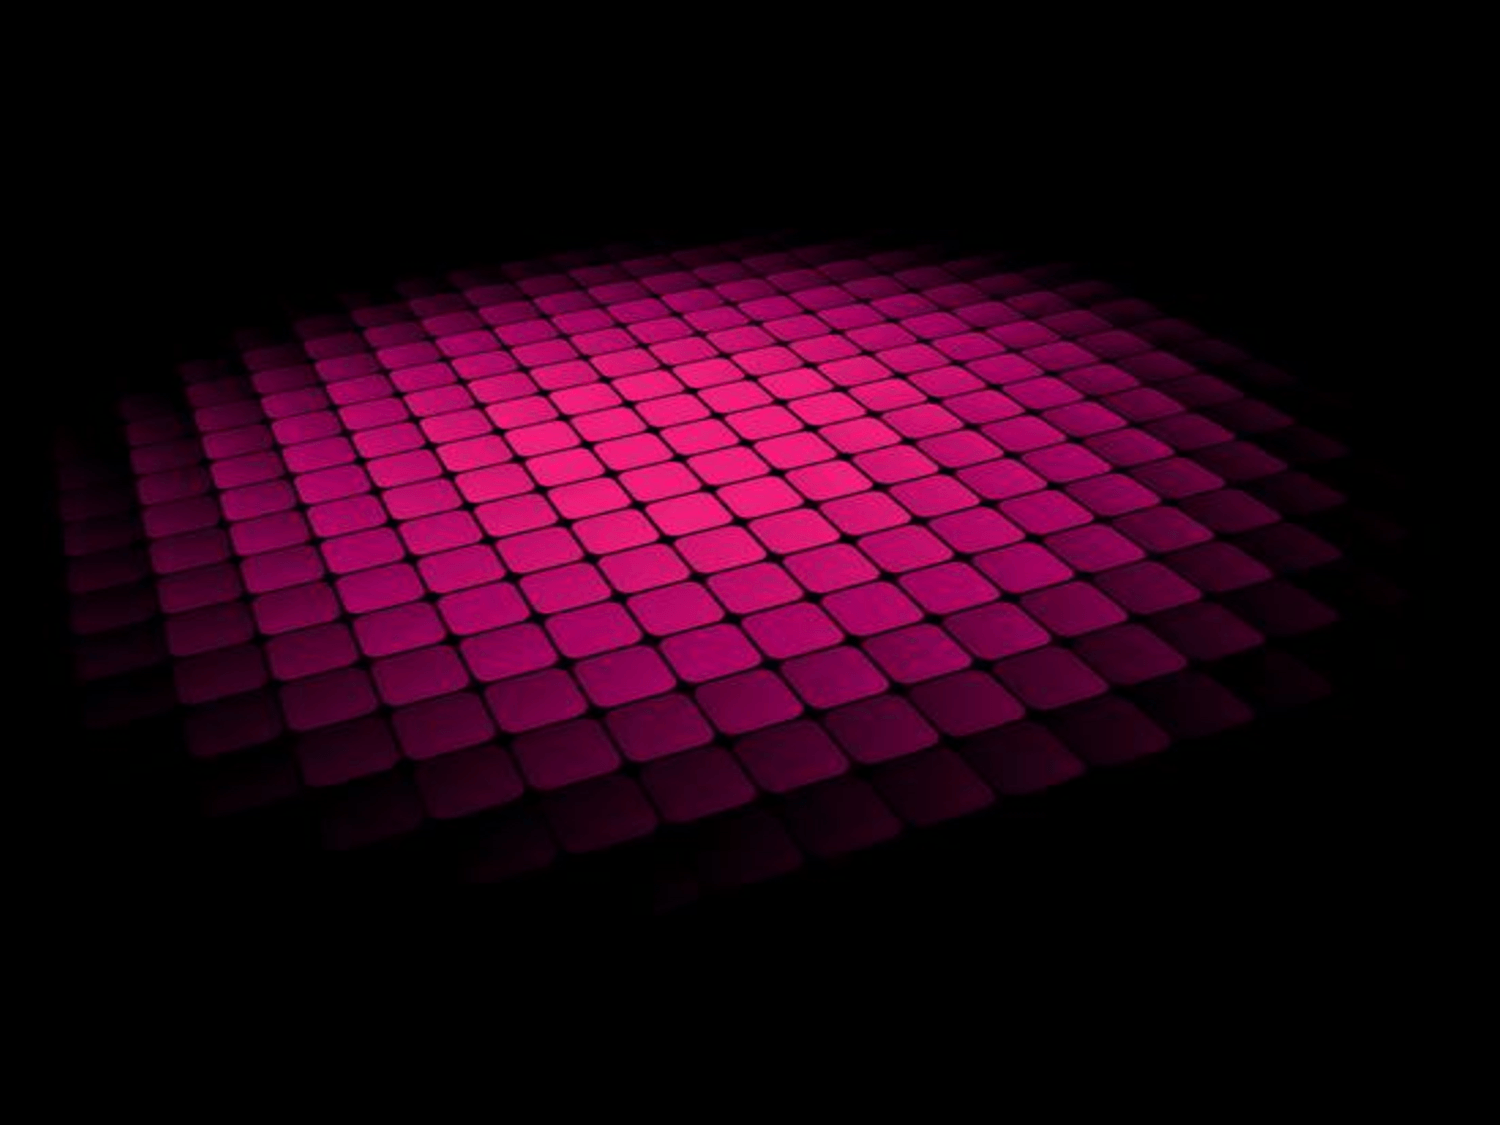 Free powerpoint black pink grid floor background. Black